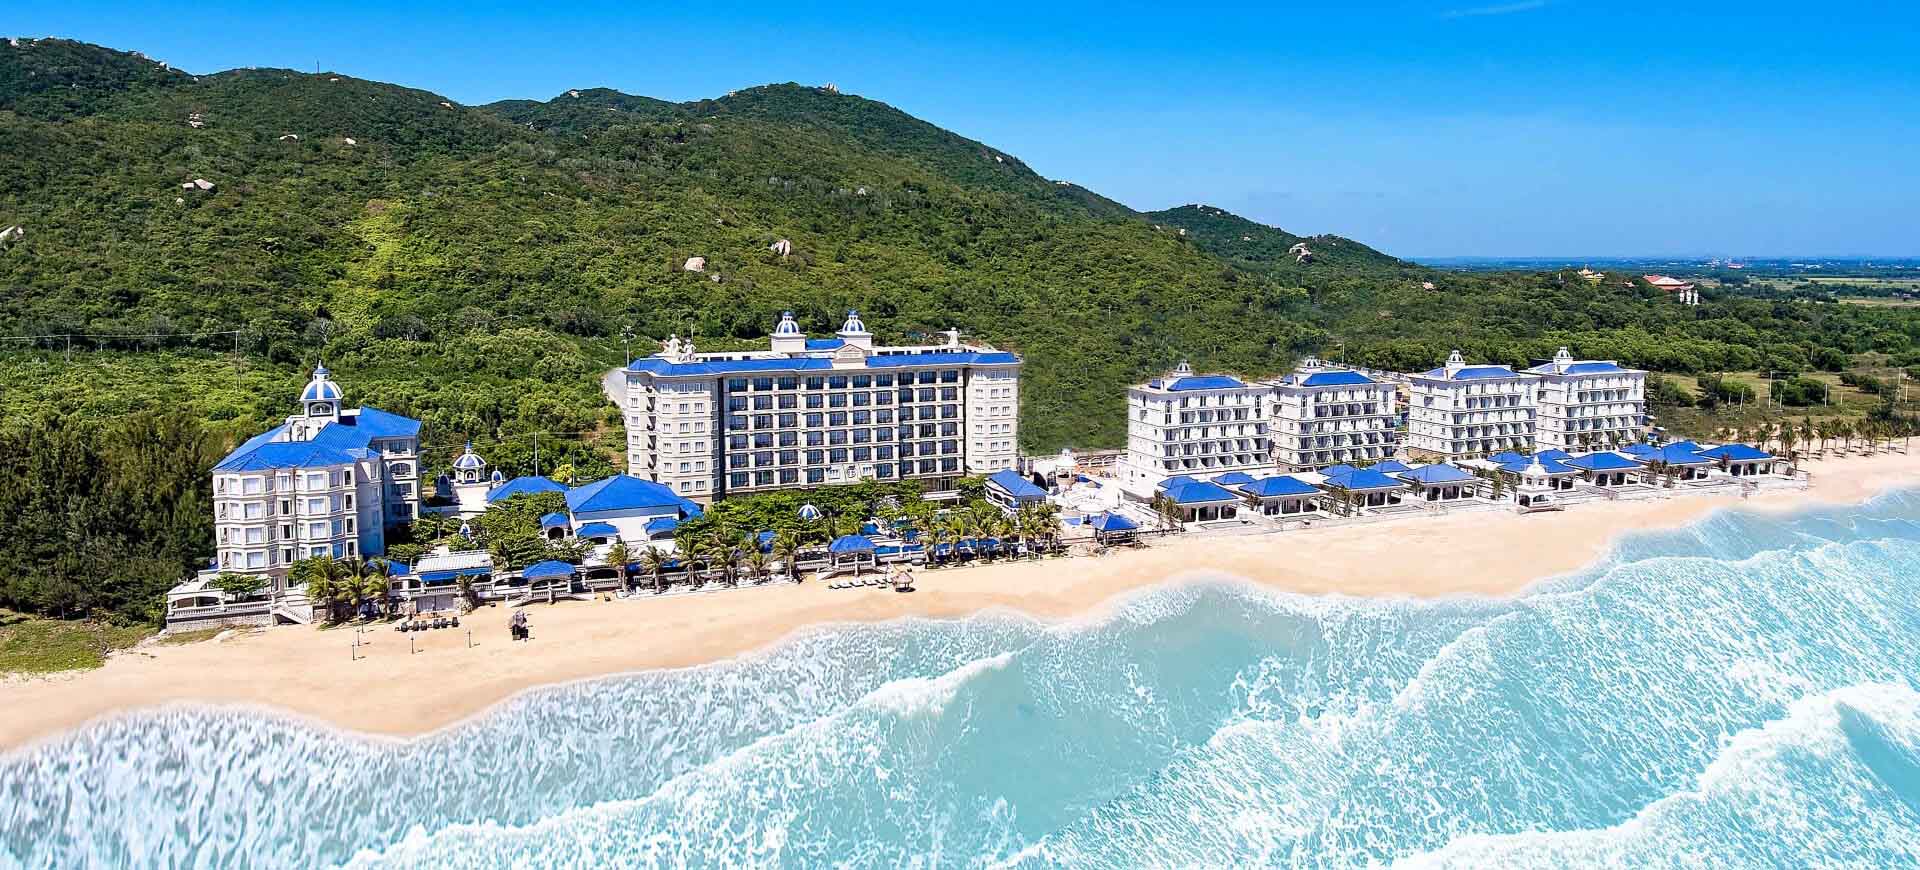 Lan Rừng Resort and Spa